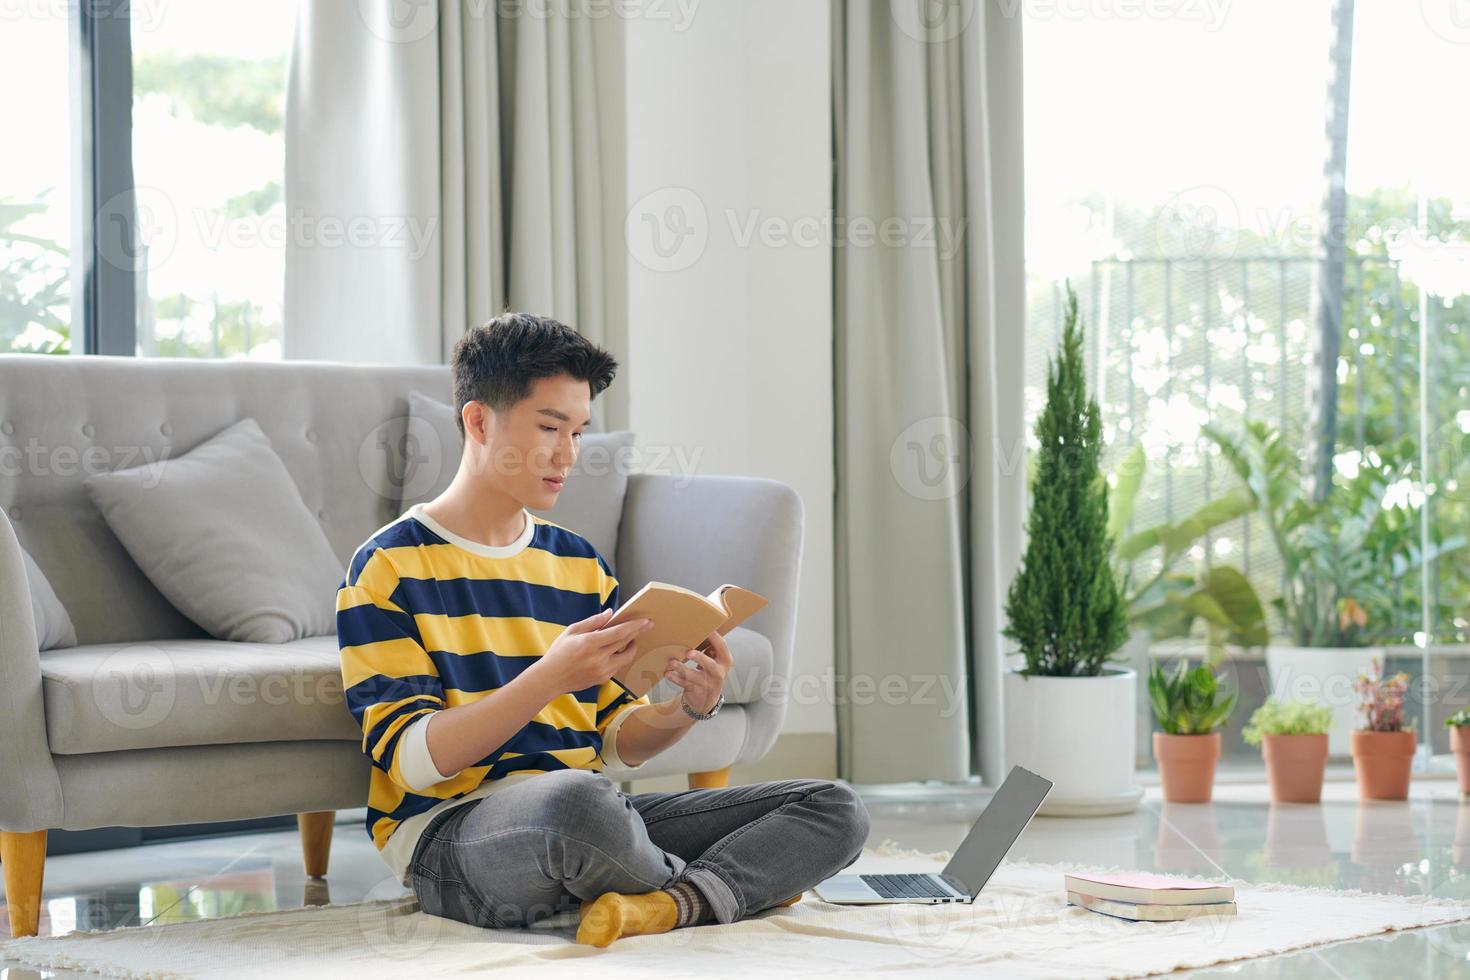 homme asiatique est assis sur le sol avec un livre et un ordinateur portable photo